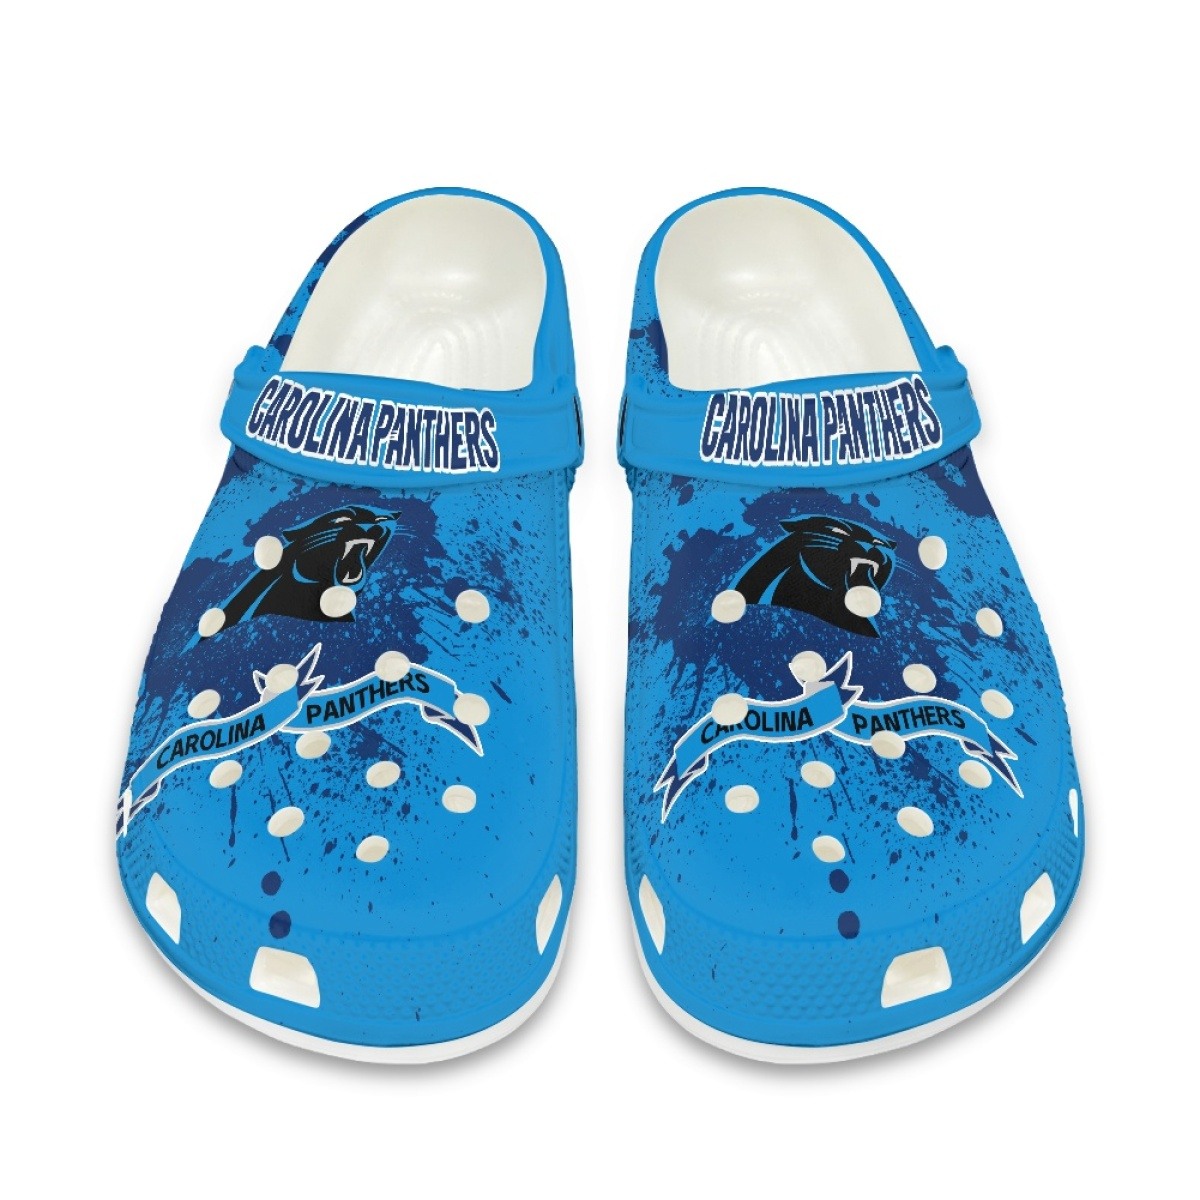 Carolina Panthers Shoes cute Style#2 Crocs Shoes for fans -Jack sport shop